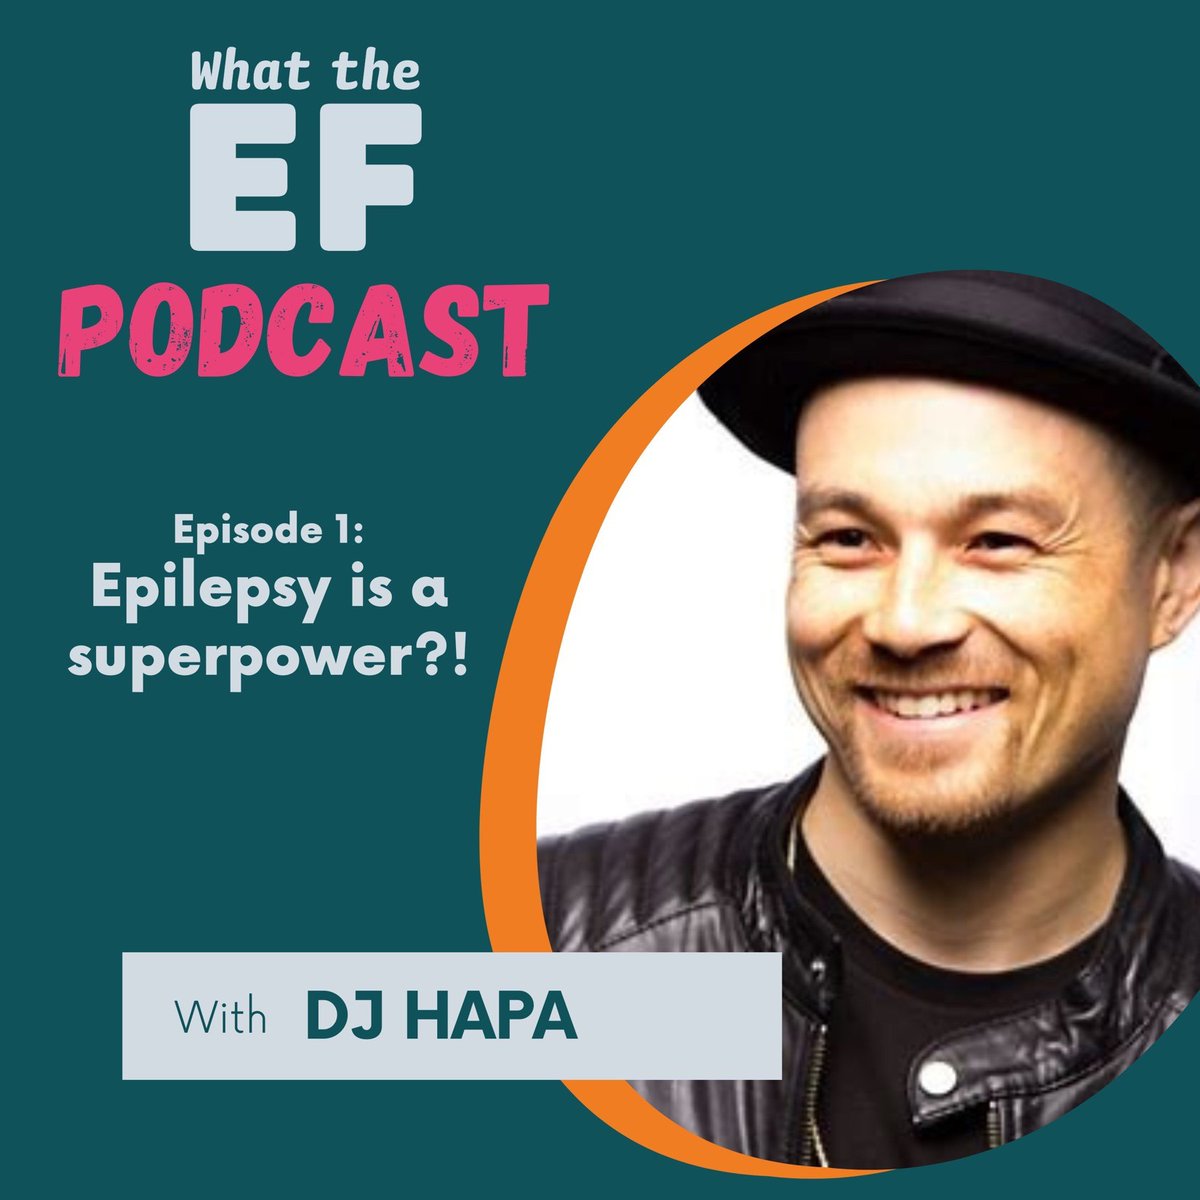 What the EF Podcast featuring DJ HAPA ##DJHapa ##epilepsyadvocacy ##epilepsypodcast ##epilepsyresources ##epilepsystigma ##whattheefpodcast #EpilepsyAwareness #livingwellwithepilepsy

bit.ly/3isM2Jf